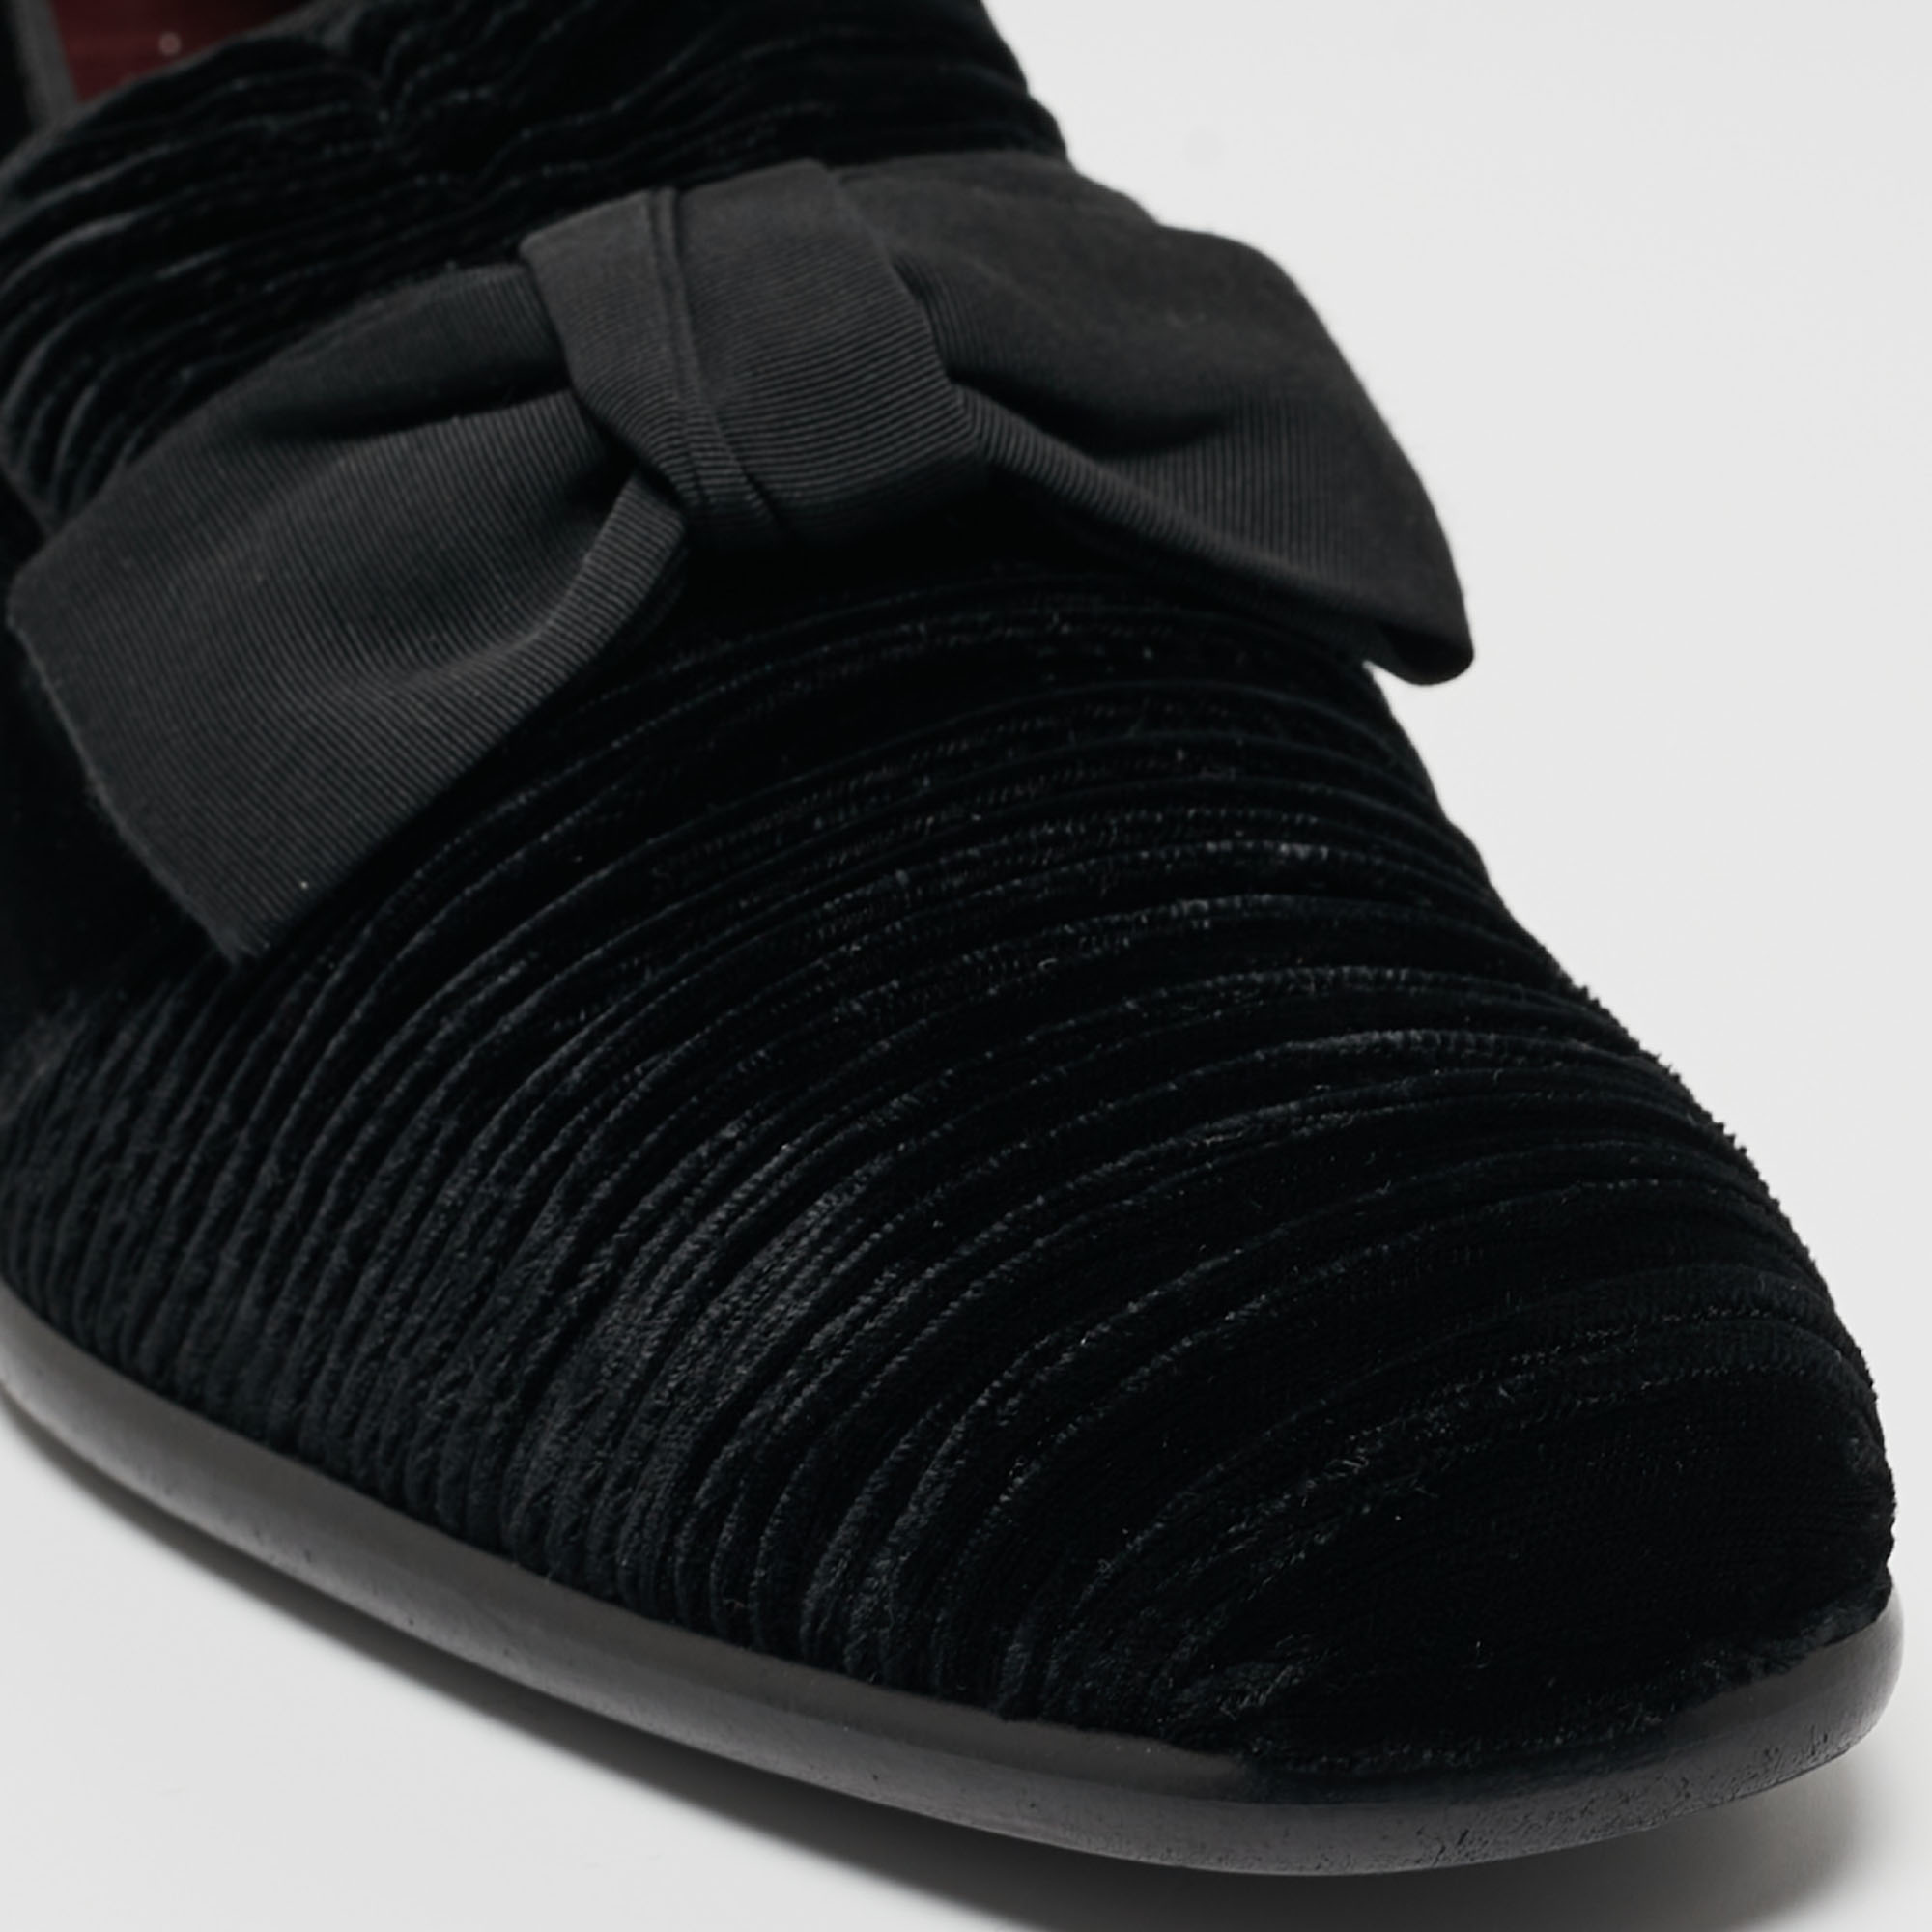 Dolce & Gabbana Black Velvet Bow Loafers Size 44